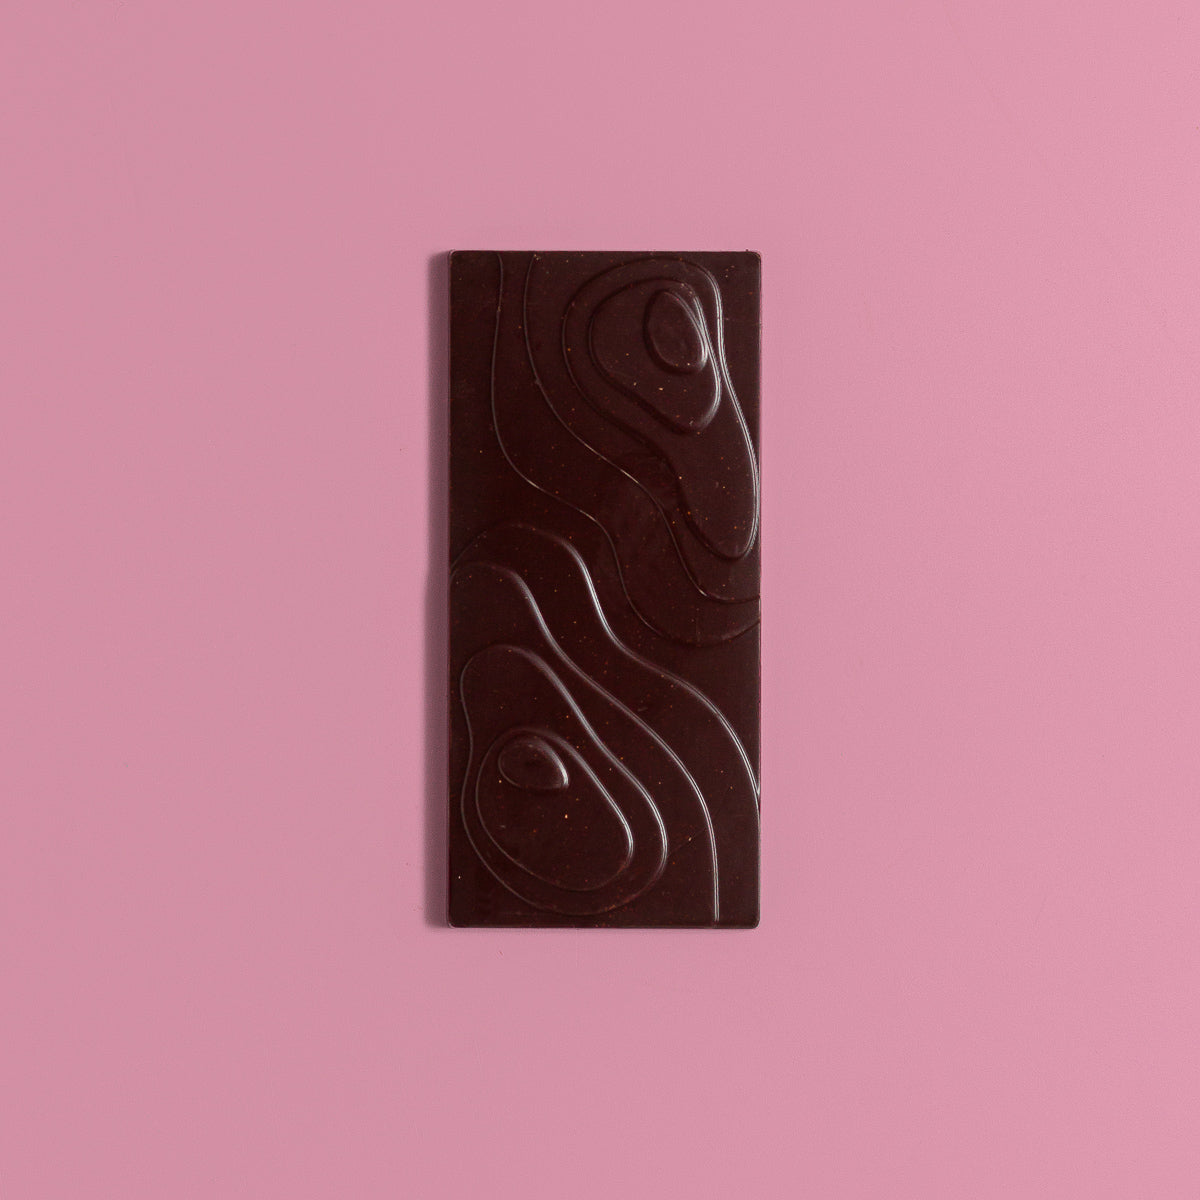 Zesty Cardamom & Coffee Dark Chocolate Bar